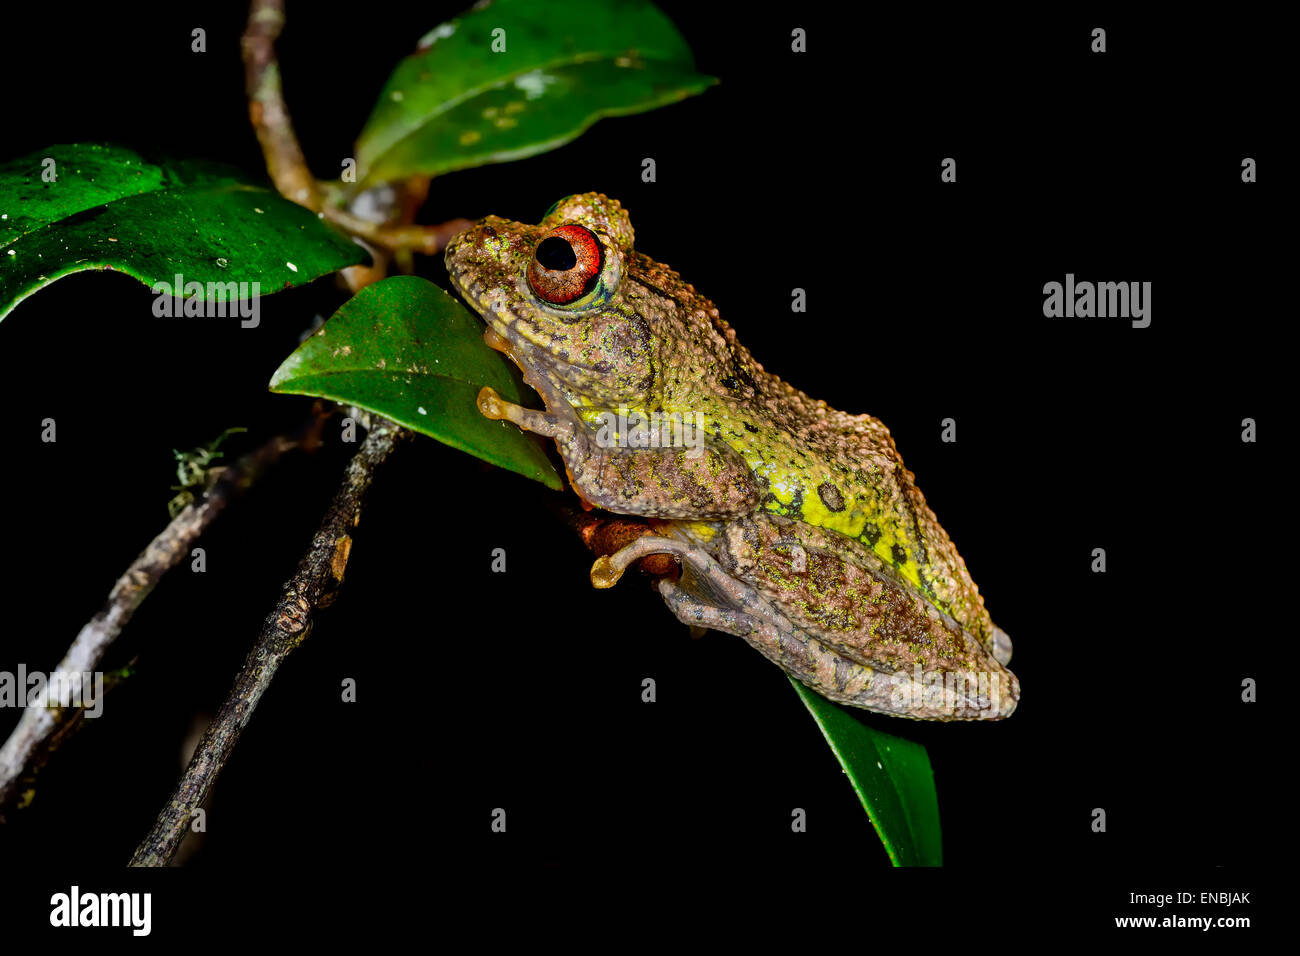 guibe's warty treefrog, andasibe, madagascar Stock Photo